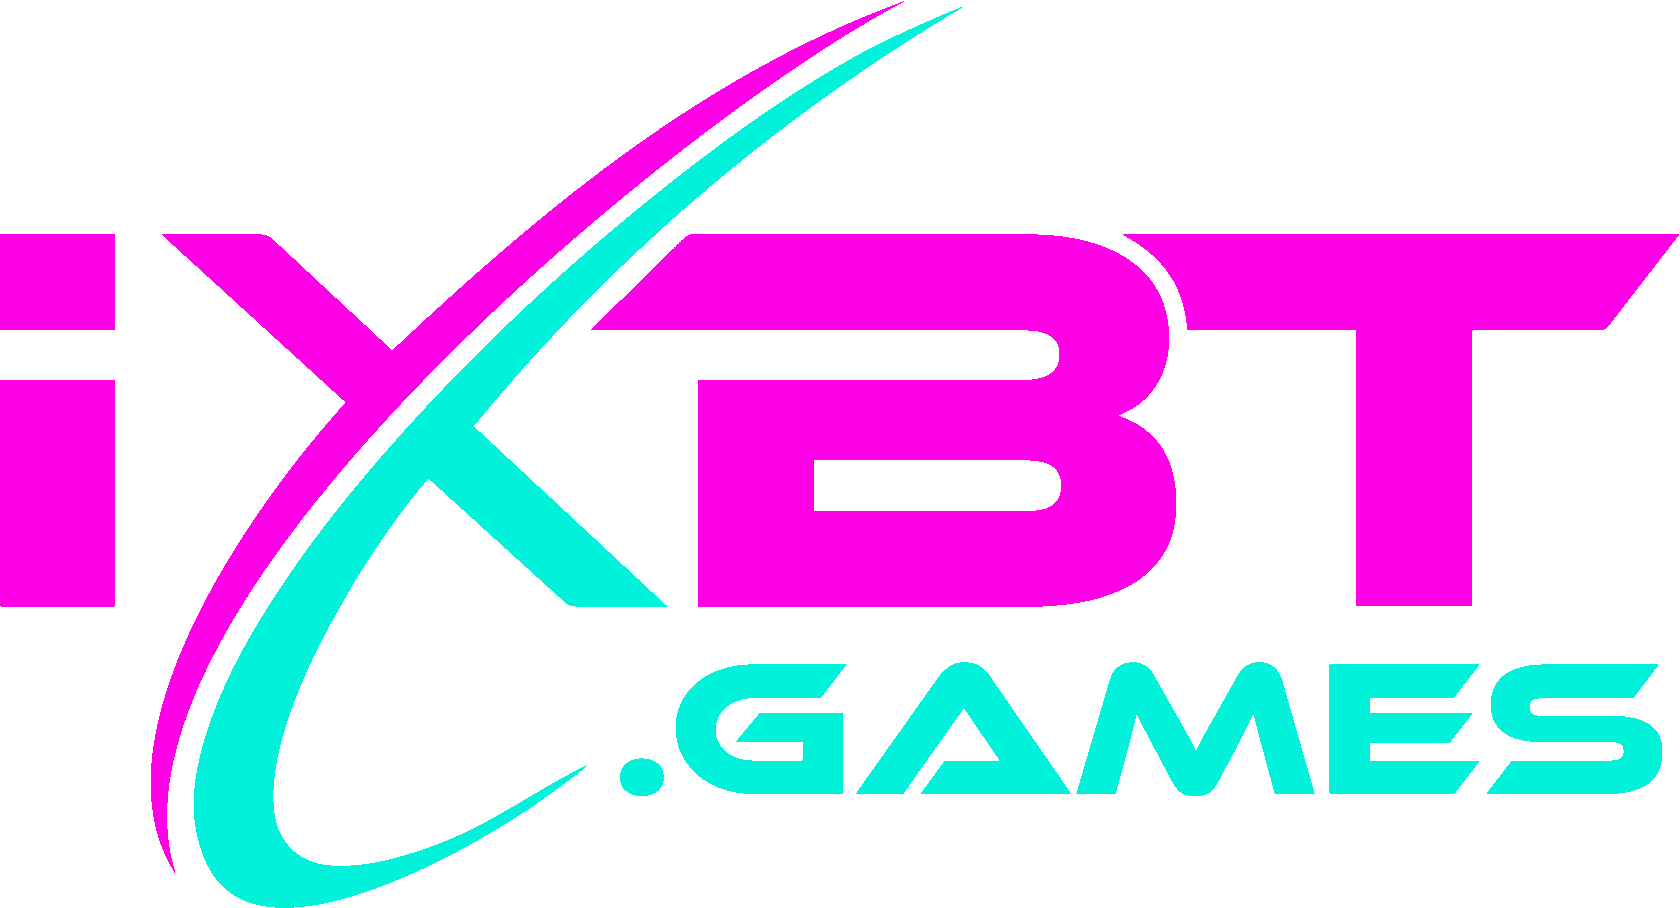 iXBT.games